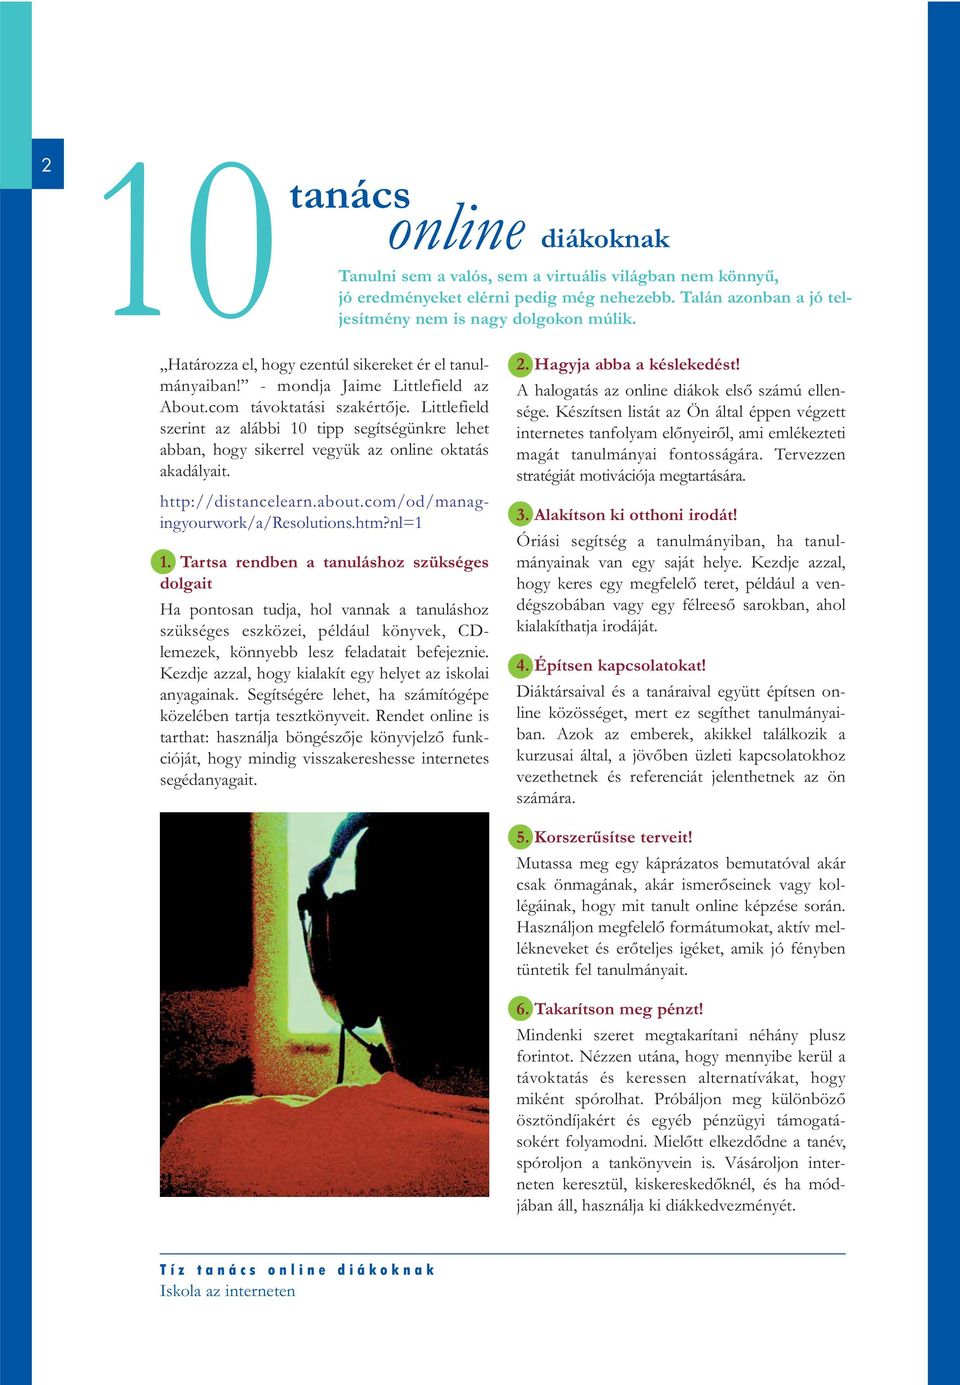 Littlefield szerint az alábbi 10 tipp segítségünkre lehet abban, hogy sikerrel vegyük az online oktatás akadályait. http://distancelearn.about.com/od/managingyourwork/a/resolutions.htm?nl=1 1.